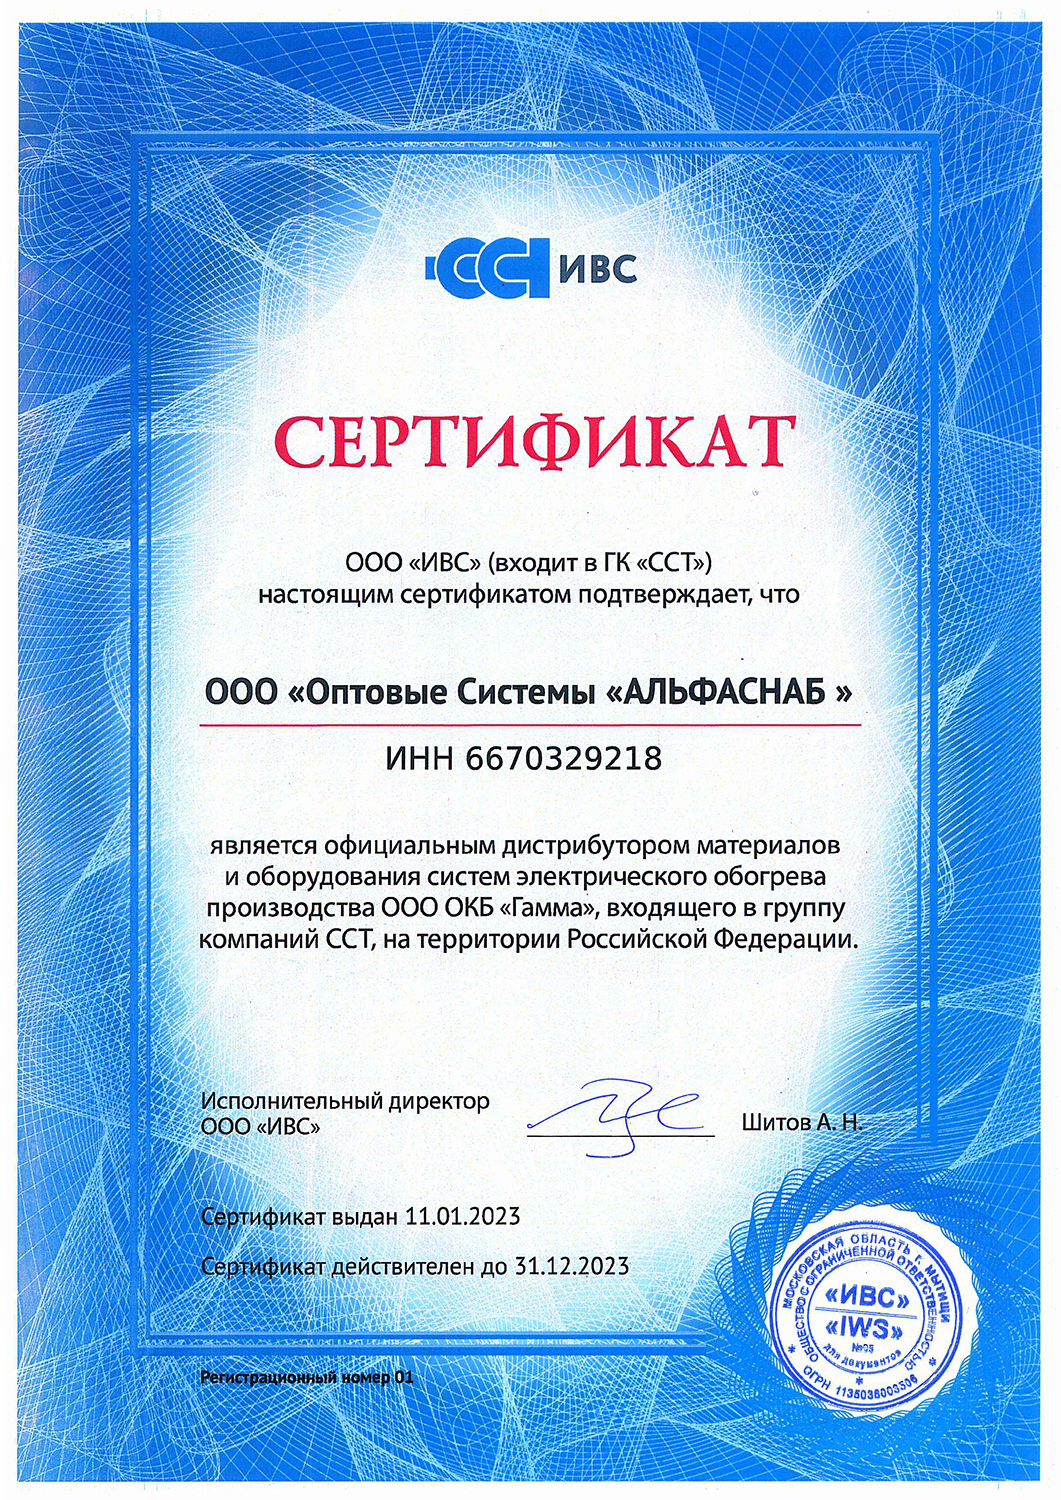 Сертификат официального дилера от ООО "ИВС" (входит в ГК "ССТ")